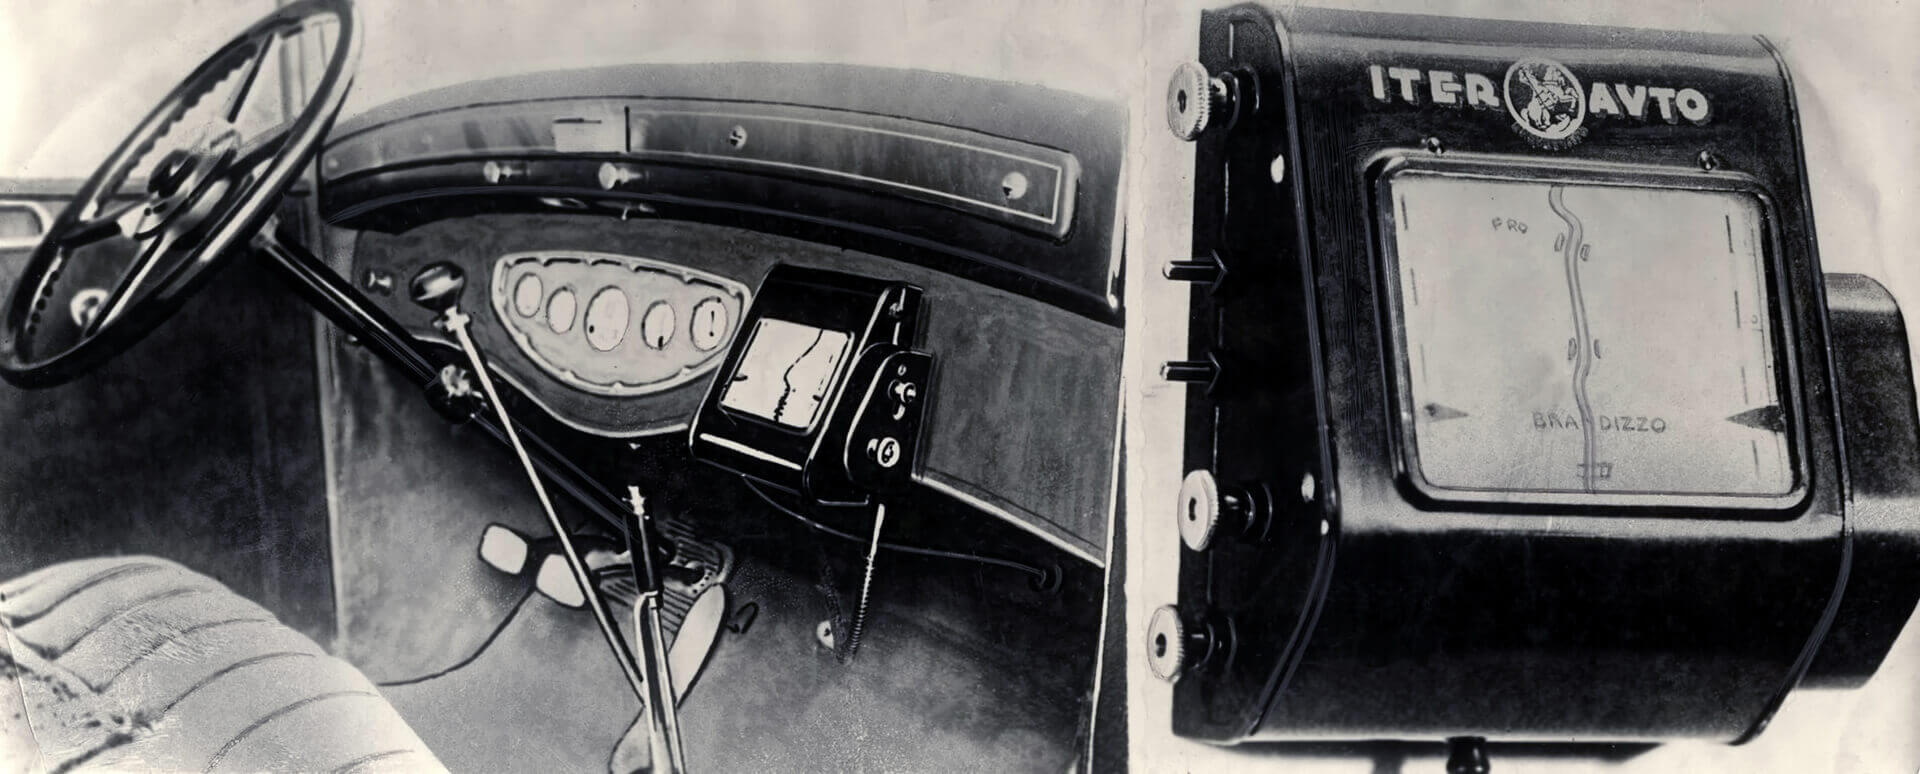 Iver Auto el primer paso de la historia del GPS en coches